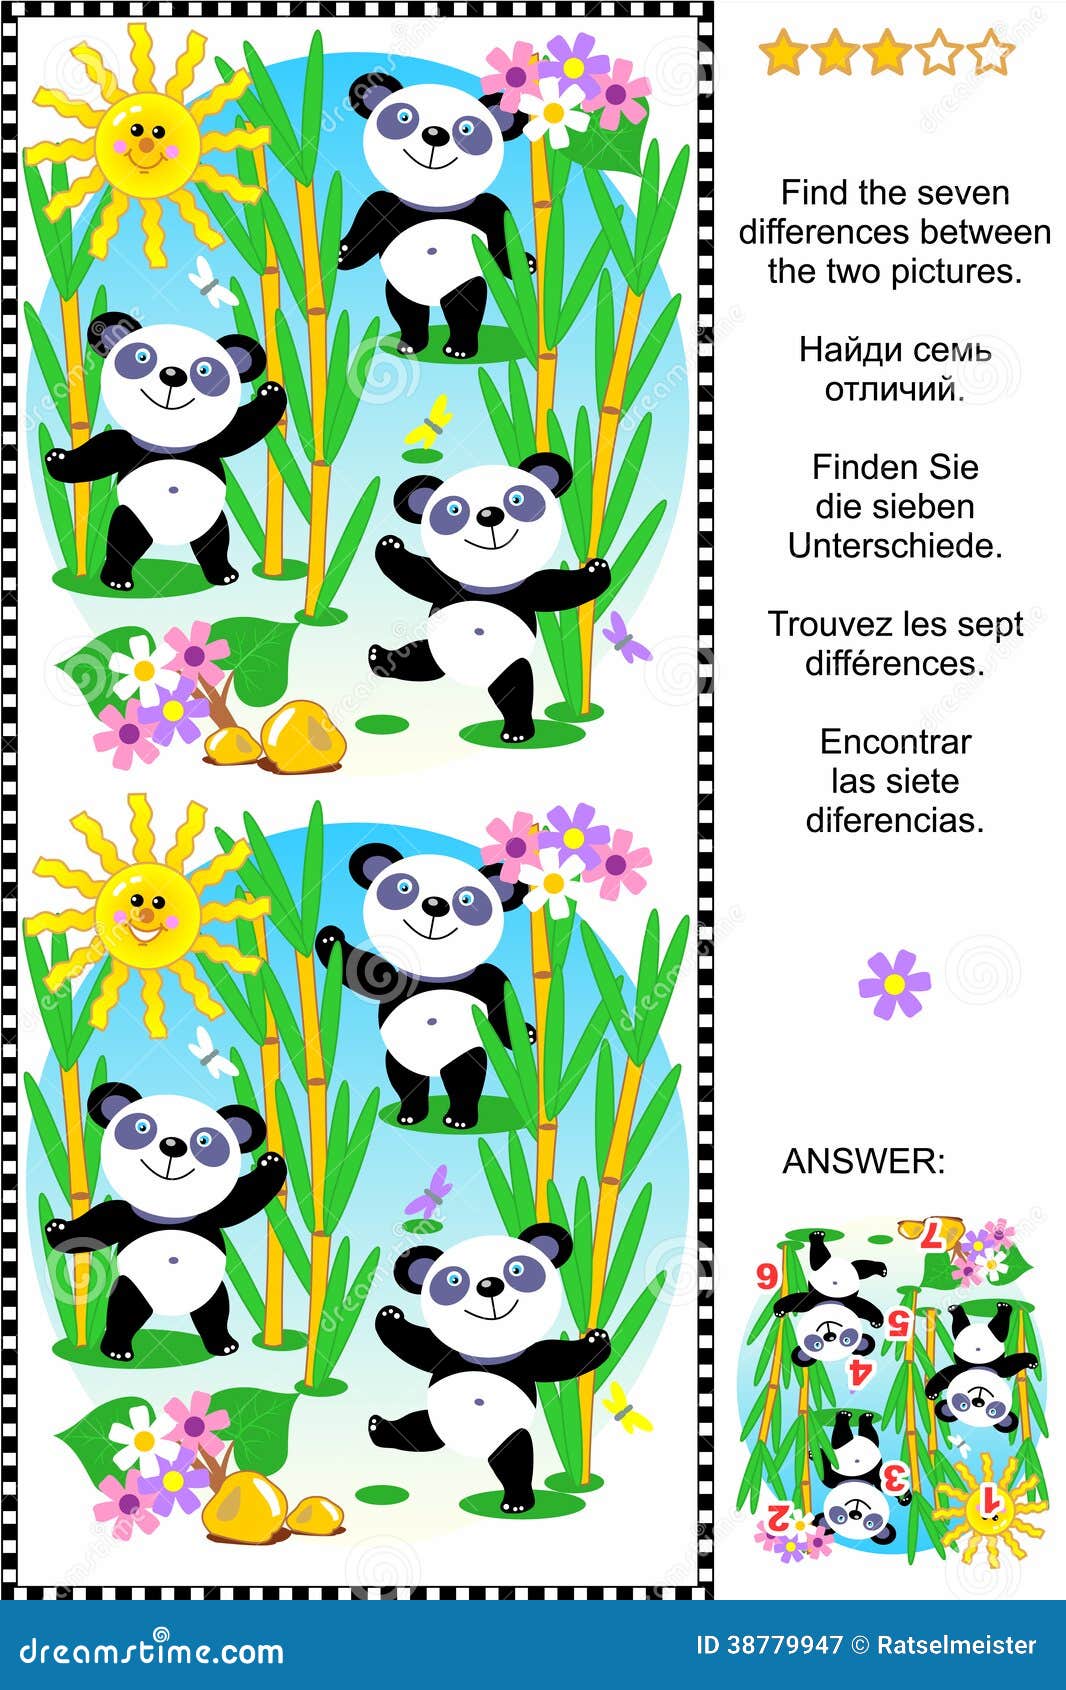 Βρείτε τον οπτικό γρίφο διαφορών - το panda αντέχει. Γρίφος εικόνων: Βρείτε ότι οι επτά διαφορές μεταξύ των δύο εικόνων του χαριτωμένου panda αντέχουν στο δάσος μπαμπού (συν το ίδιο κείμενο στόχου στα ρωσικά, γερμανικά, γαλλικά και ισπανικά). Απάντηση συμπεριλαμβανόμενη.